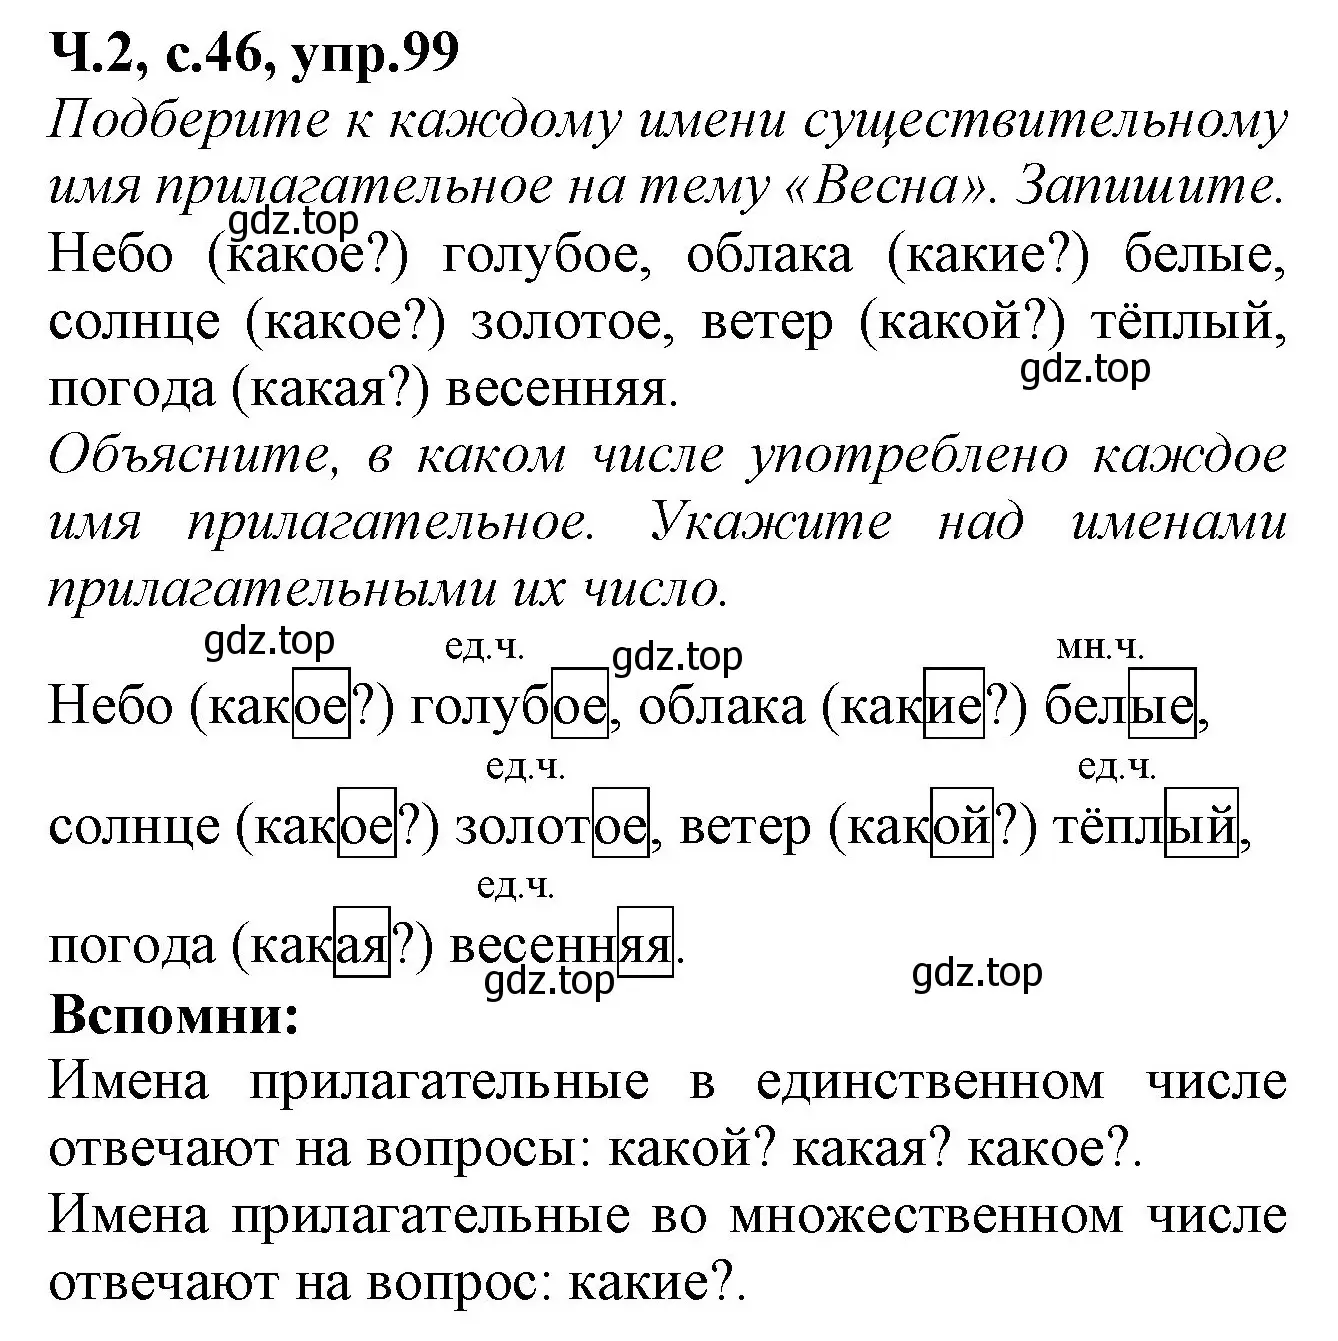 Решение номер 99 (страница 46) гдз по русскому языку 2 класс Канакина, рабочая тетрадь 2 часть